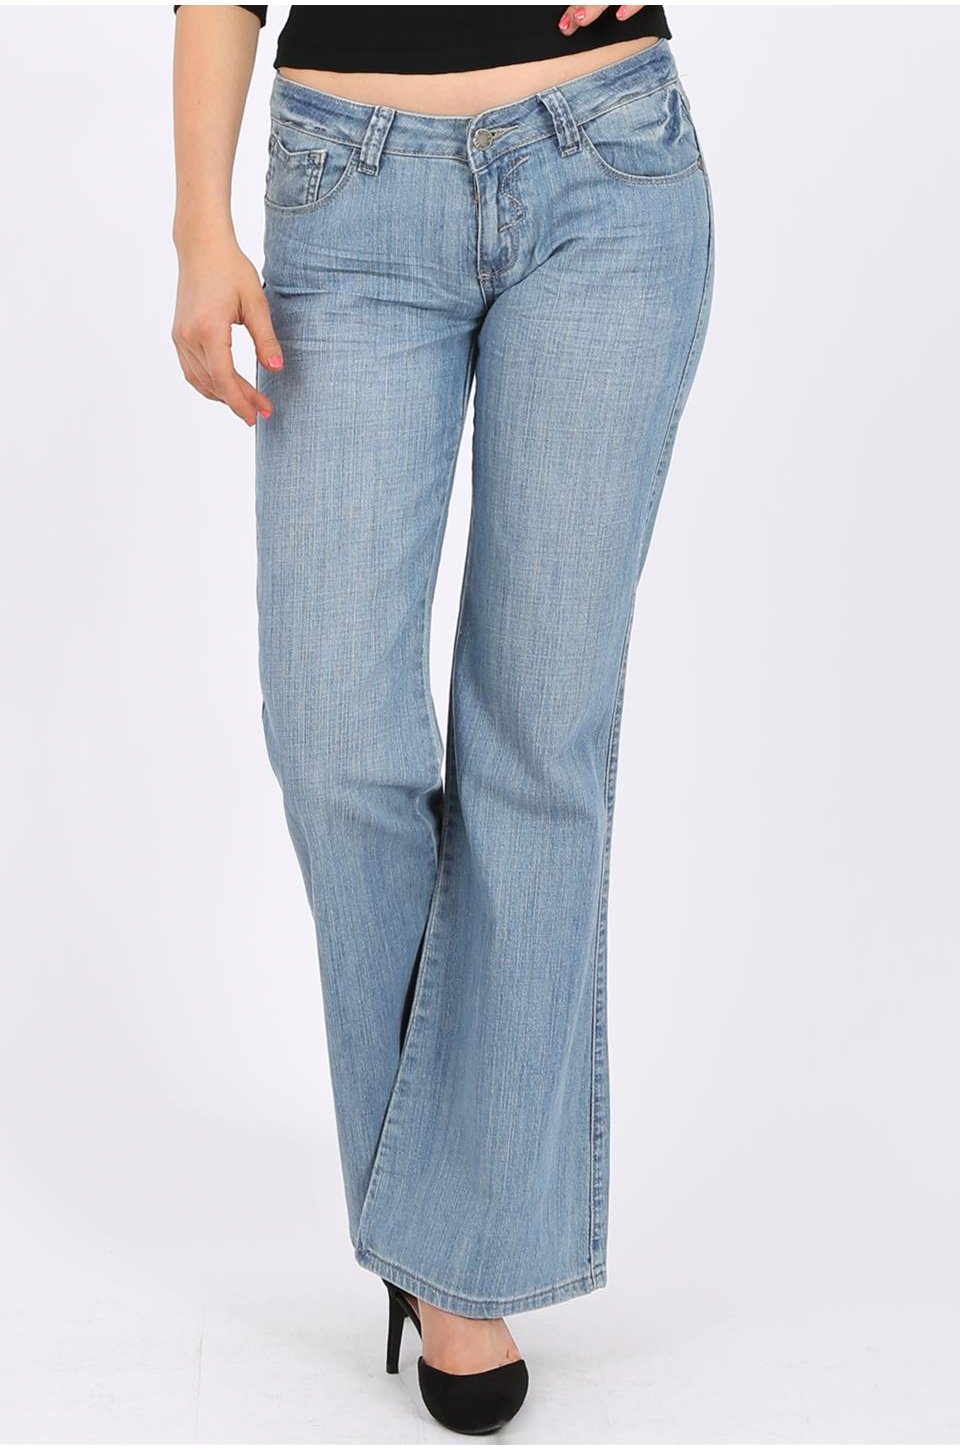 women's boot leg jeans in light blue wash